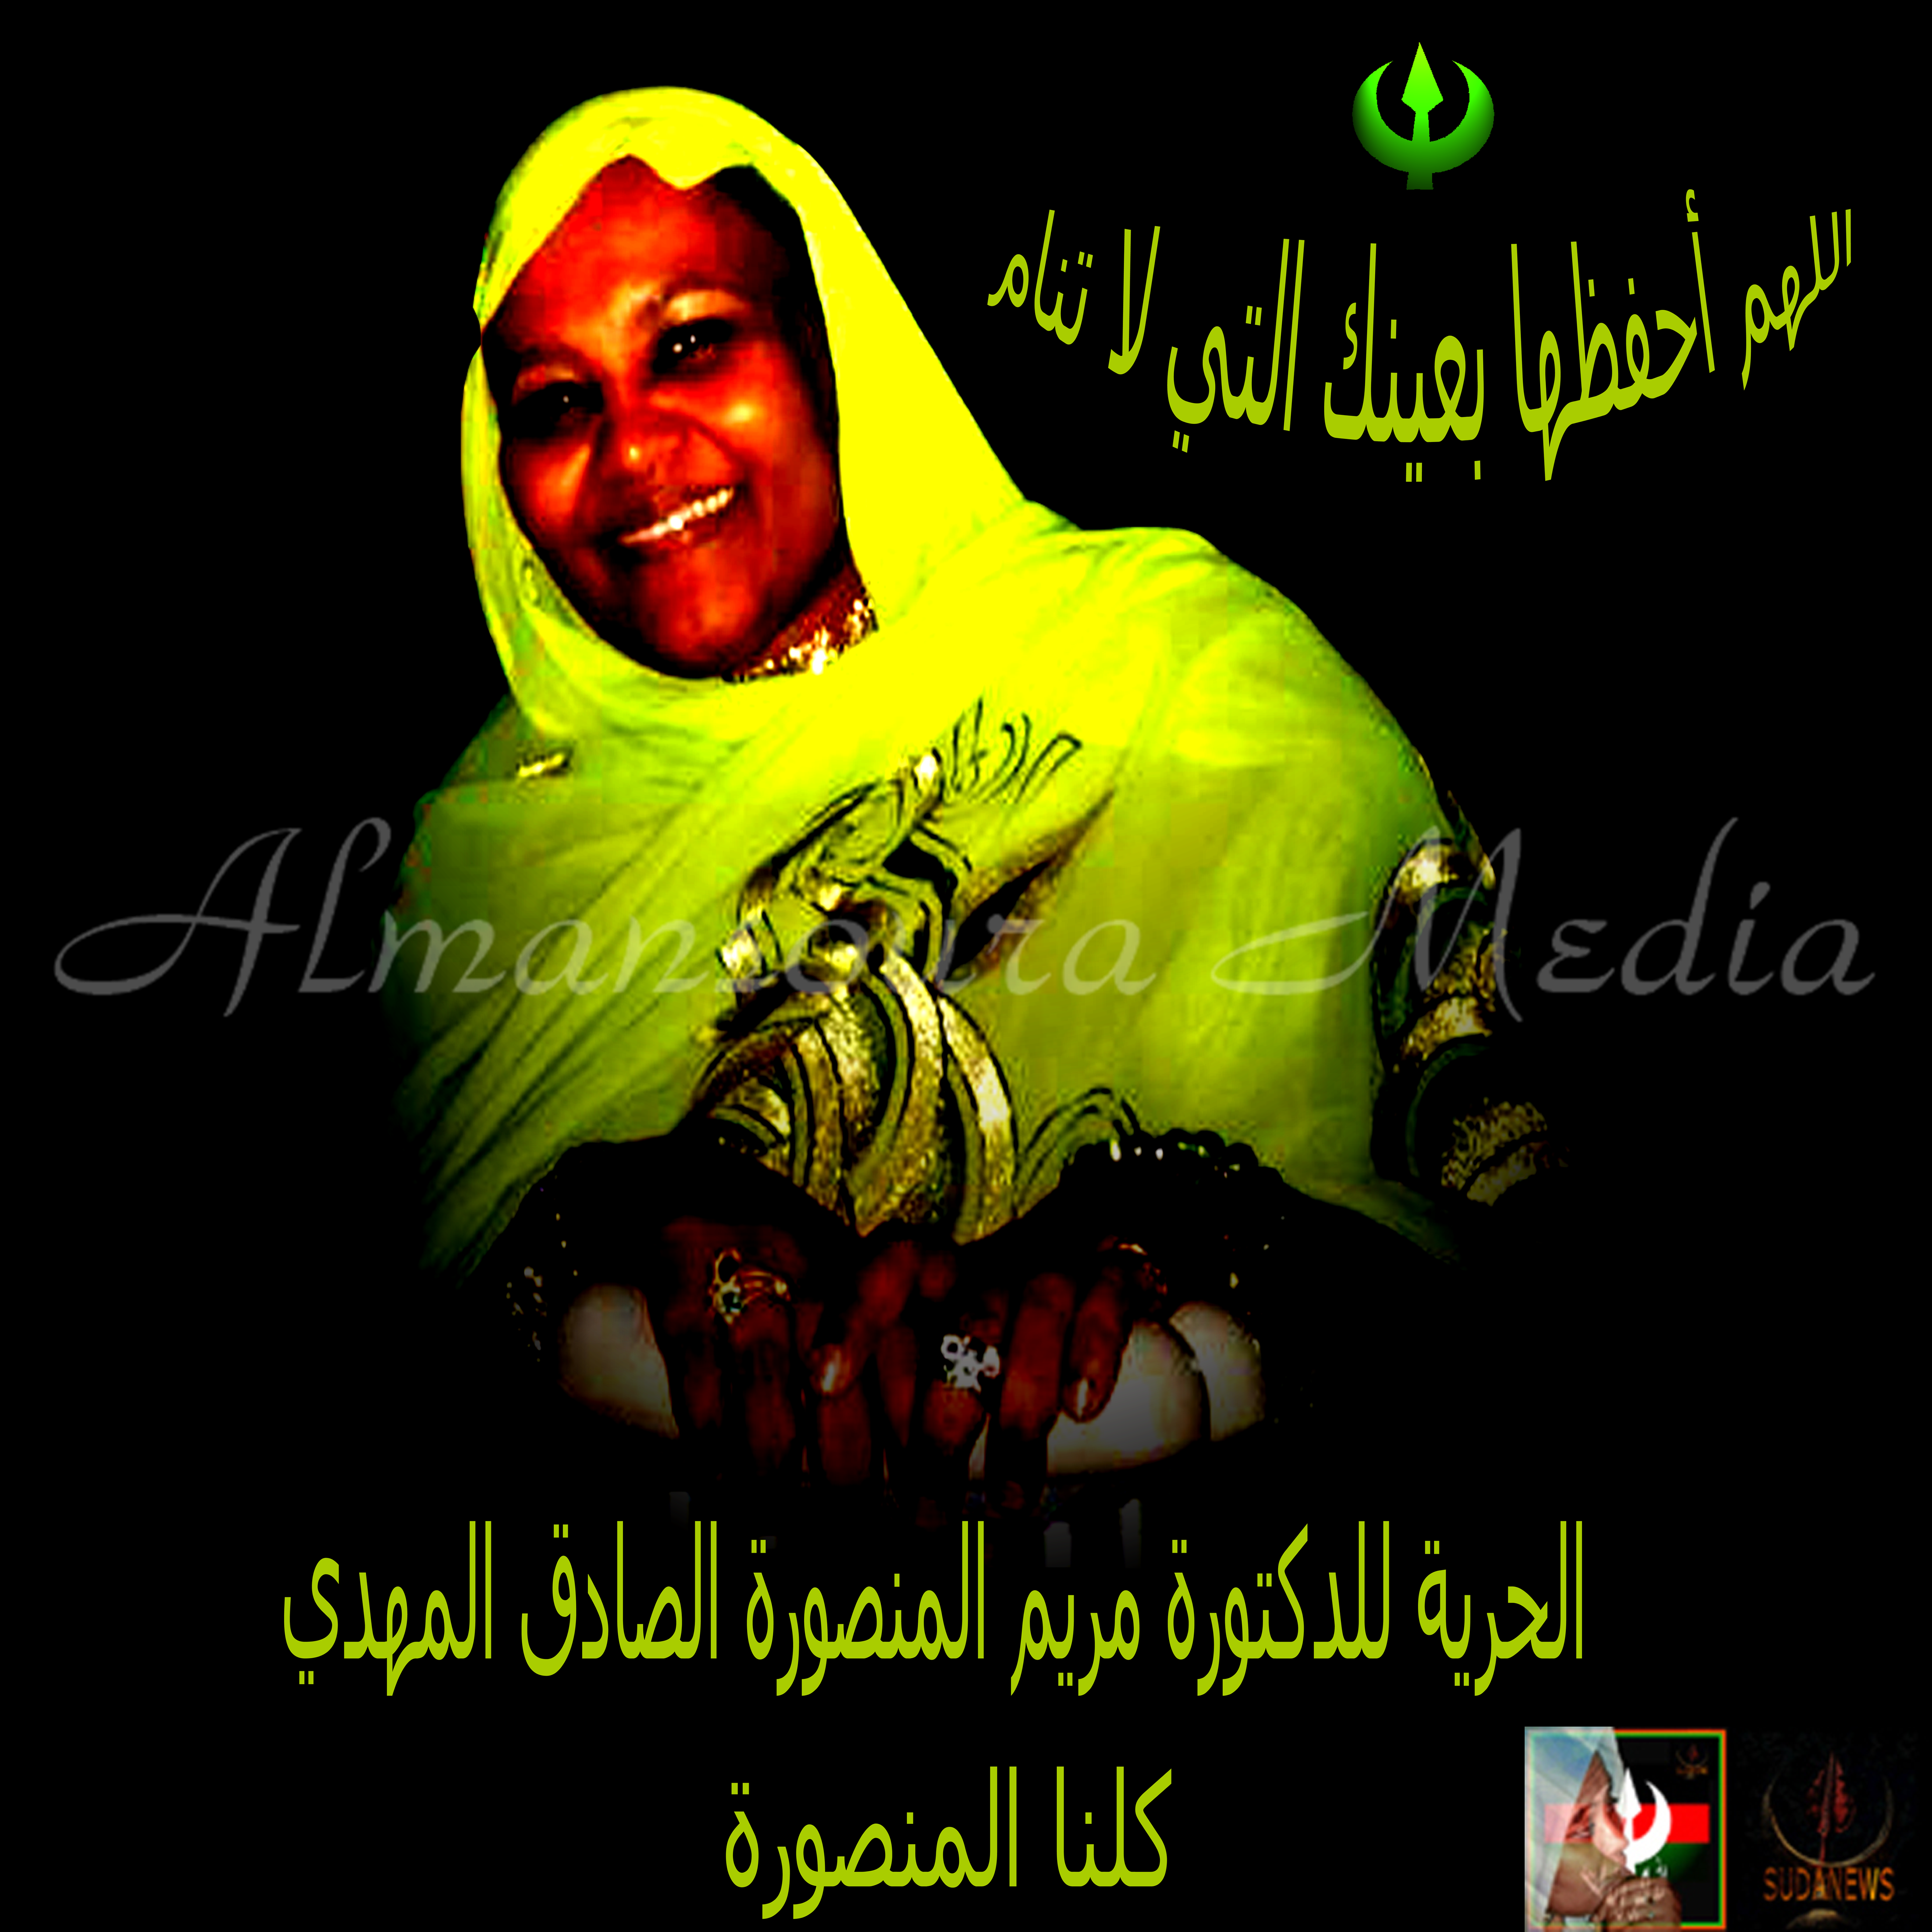 الحرية للحبيبة الدكتورة مريم الصادق المهدي نائبة رئيس حزب الأمة القومي ... كلنا المنصورة